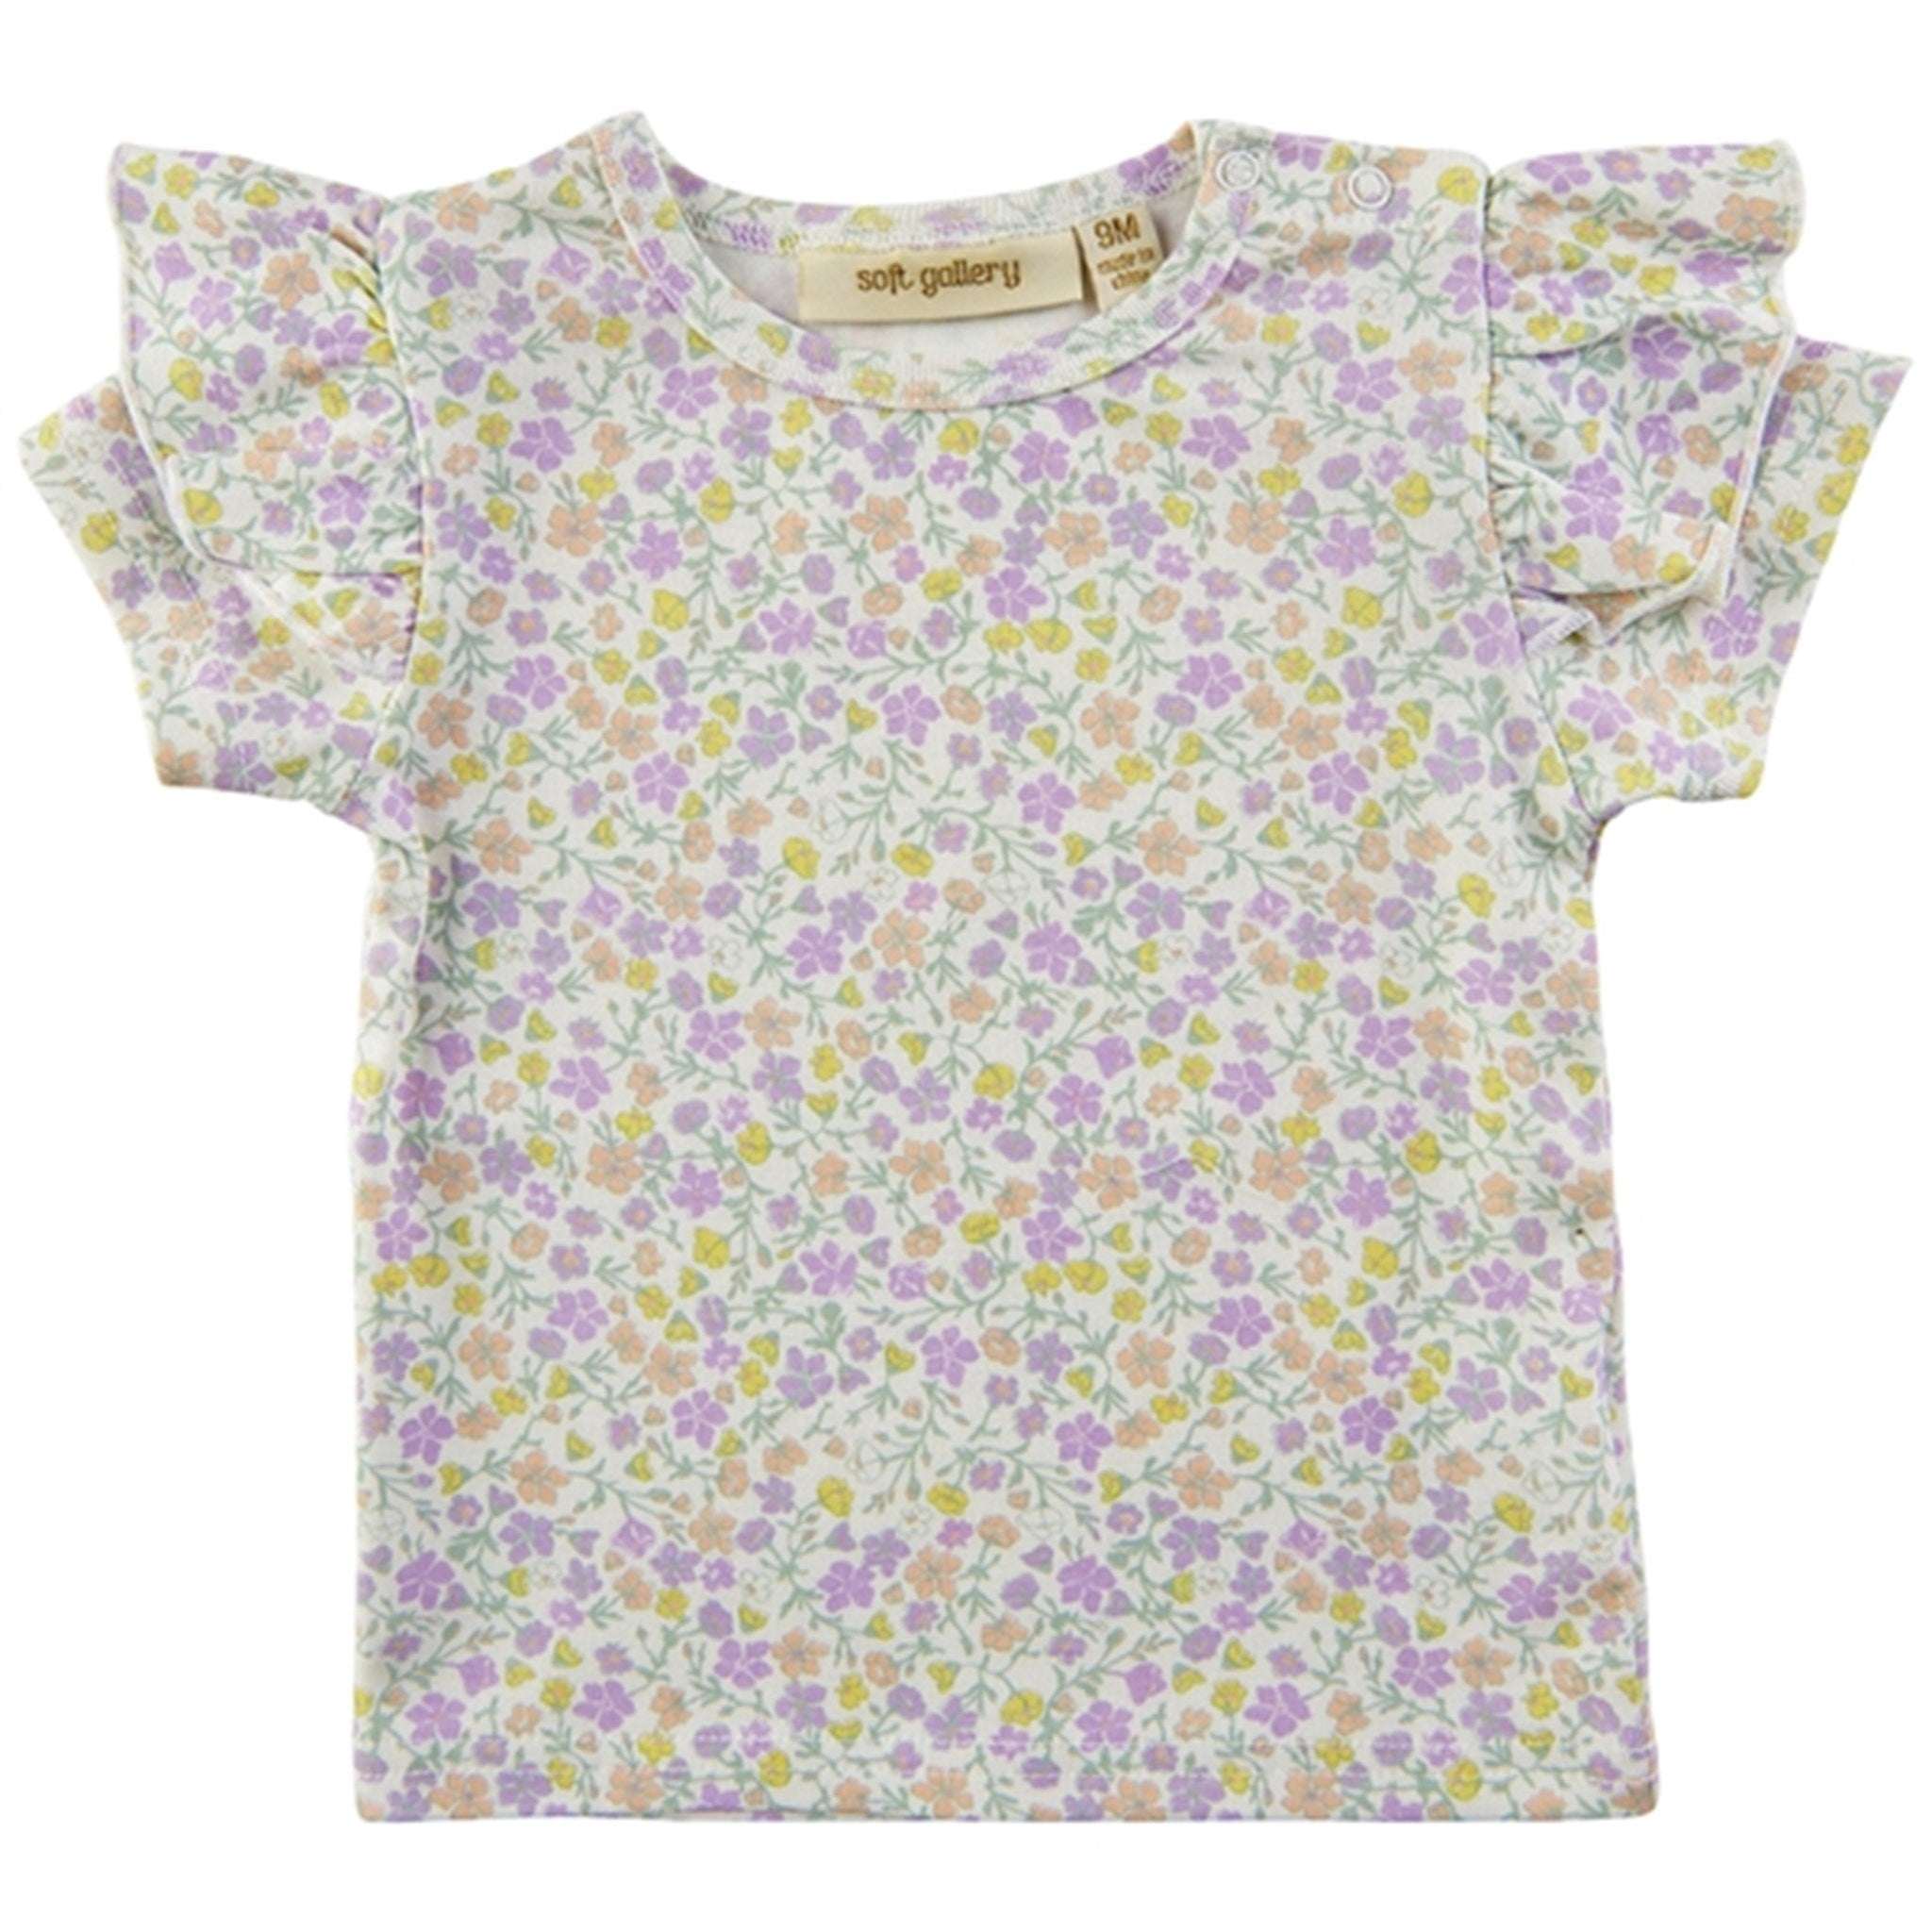 Soft Gallery Snow White Janisa Pastelflower T-shirt